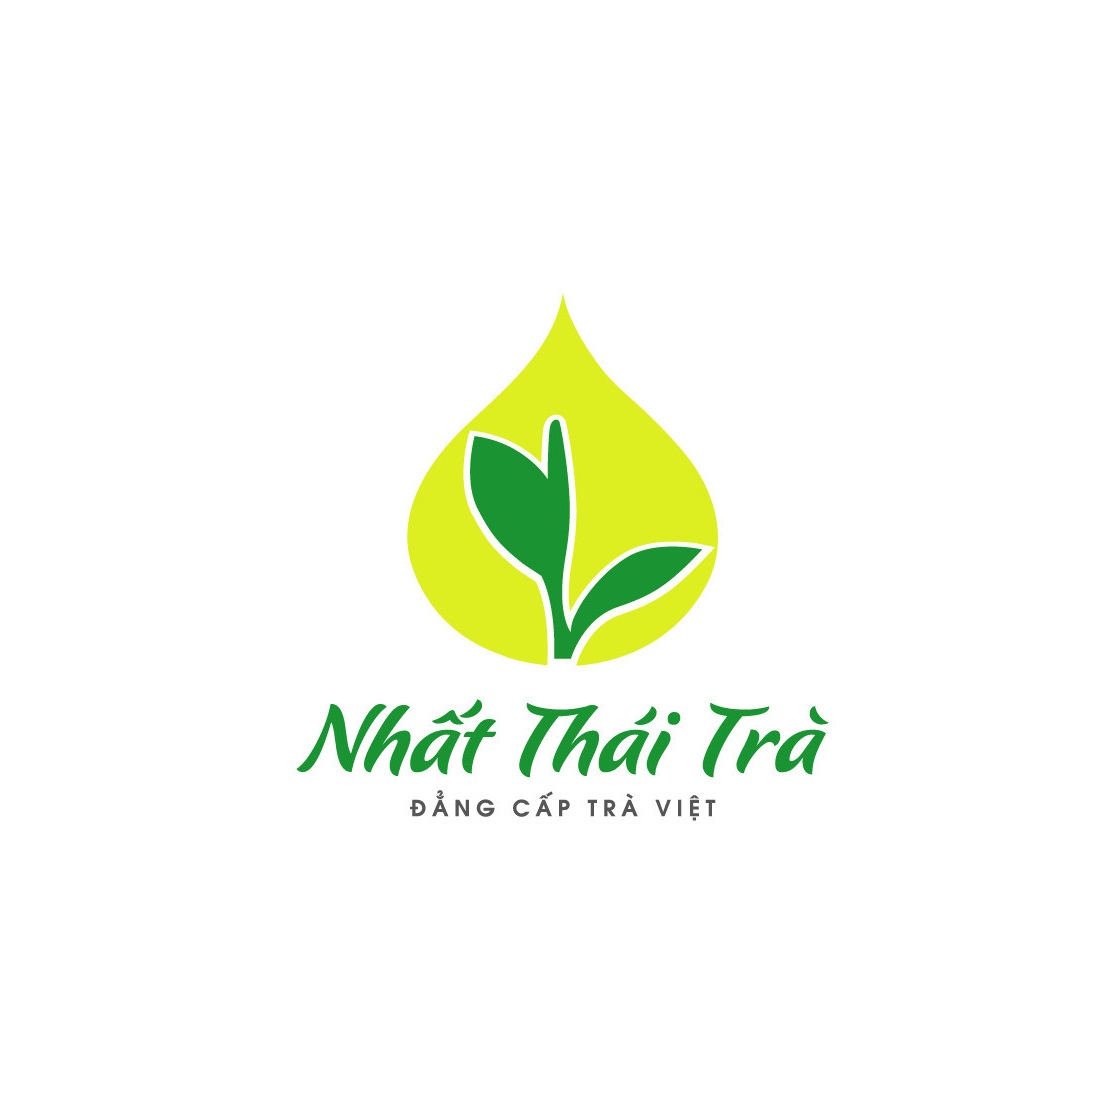 nhatthaitra.com